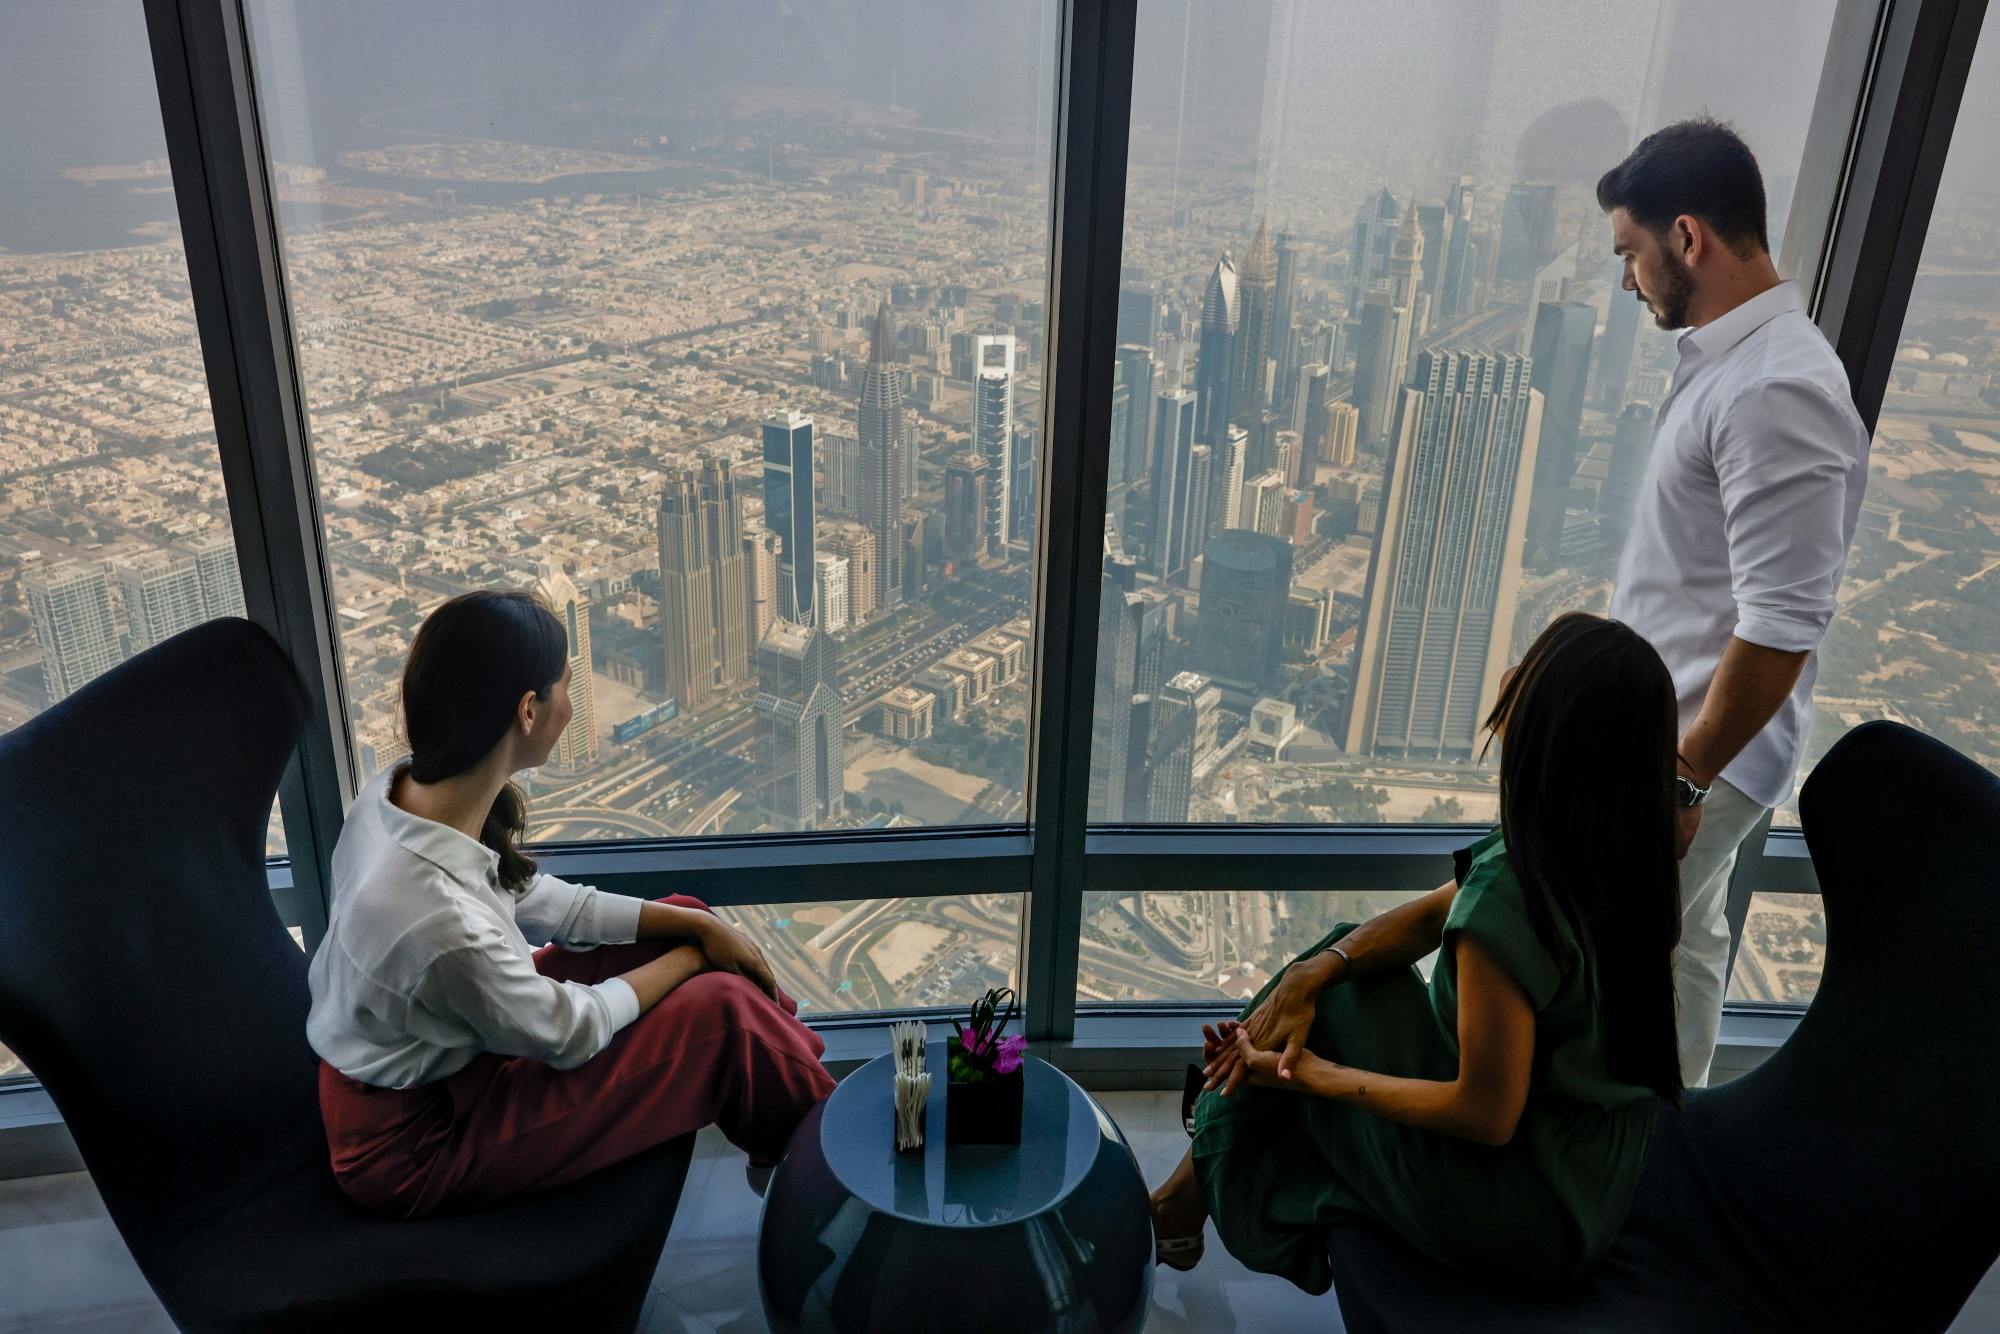 Burj Khalifa Tickets mit bevorzugtem Eintritt zur 124., 125. und 148. Etage